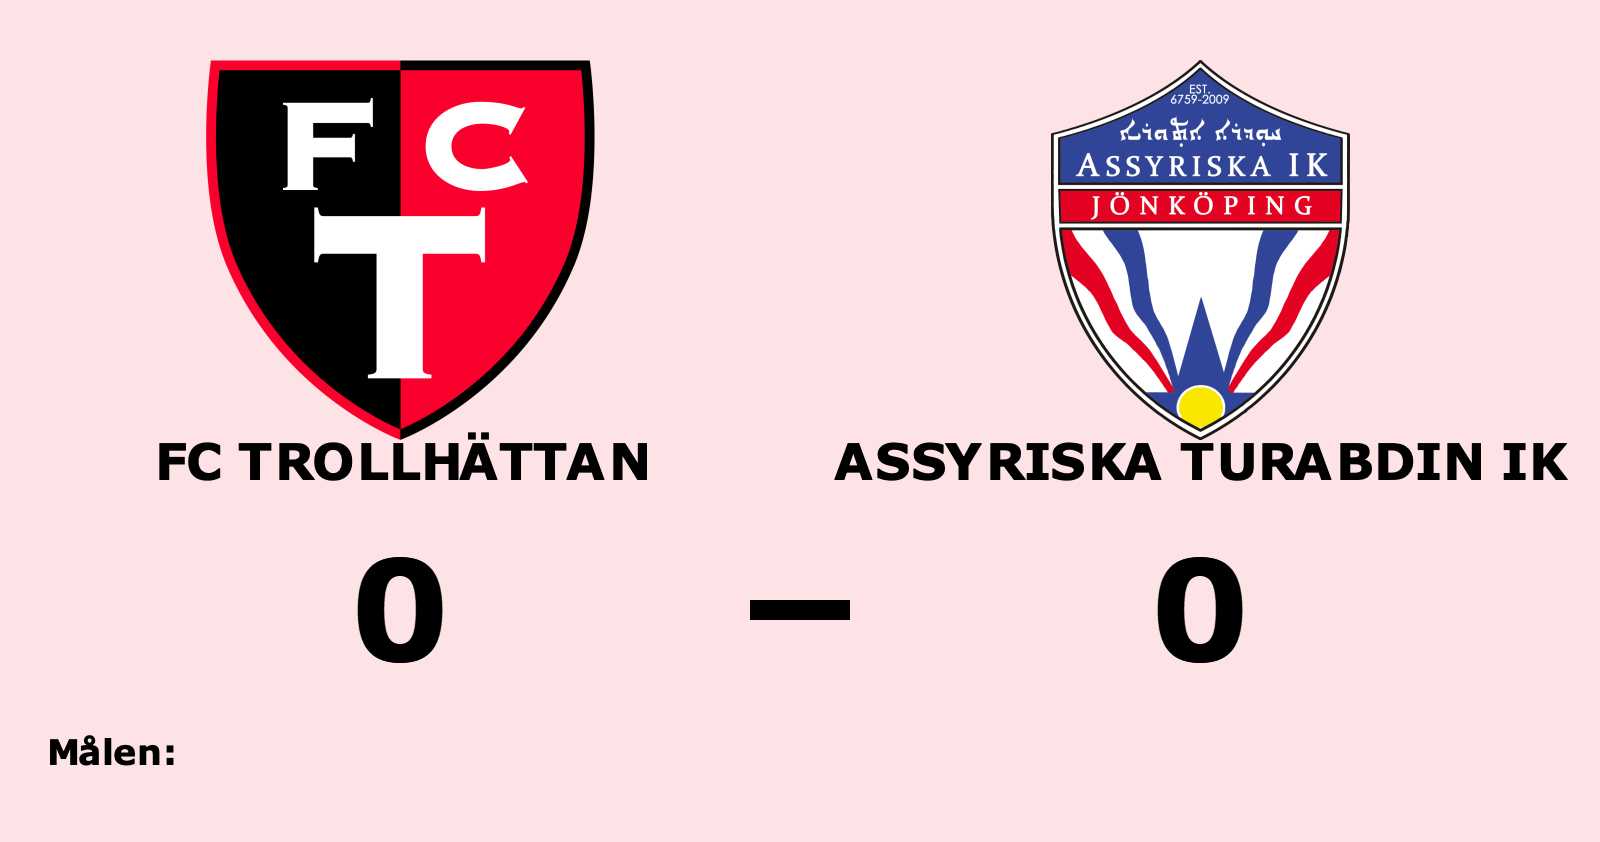 Mållös match när FC Trollhättan mötte Assyriska Turabdin IK